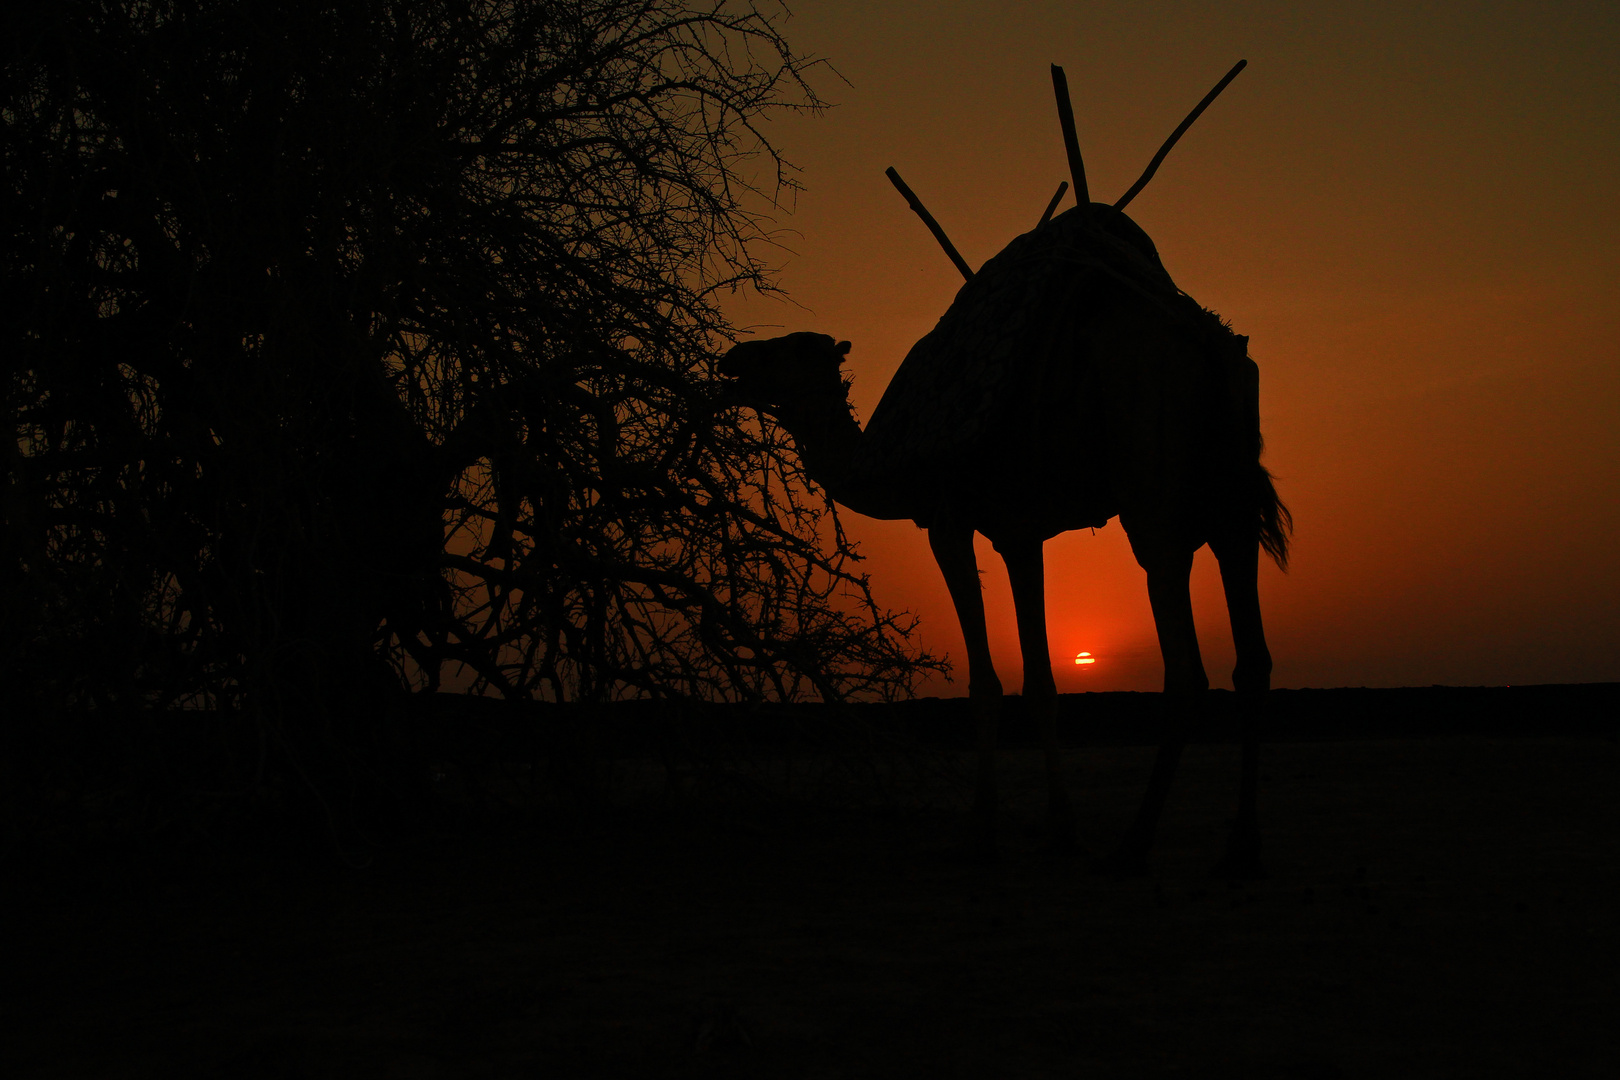 Sunset in der Danakil-Wüste, Äthiopien